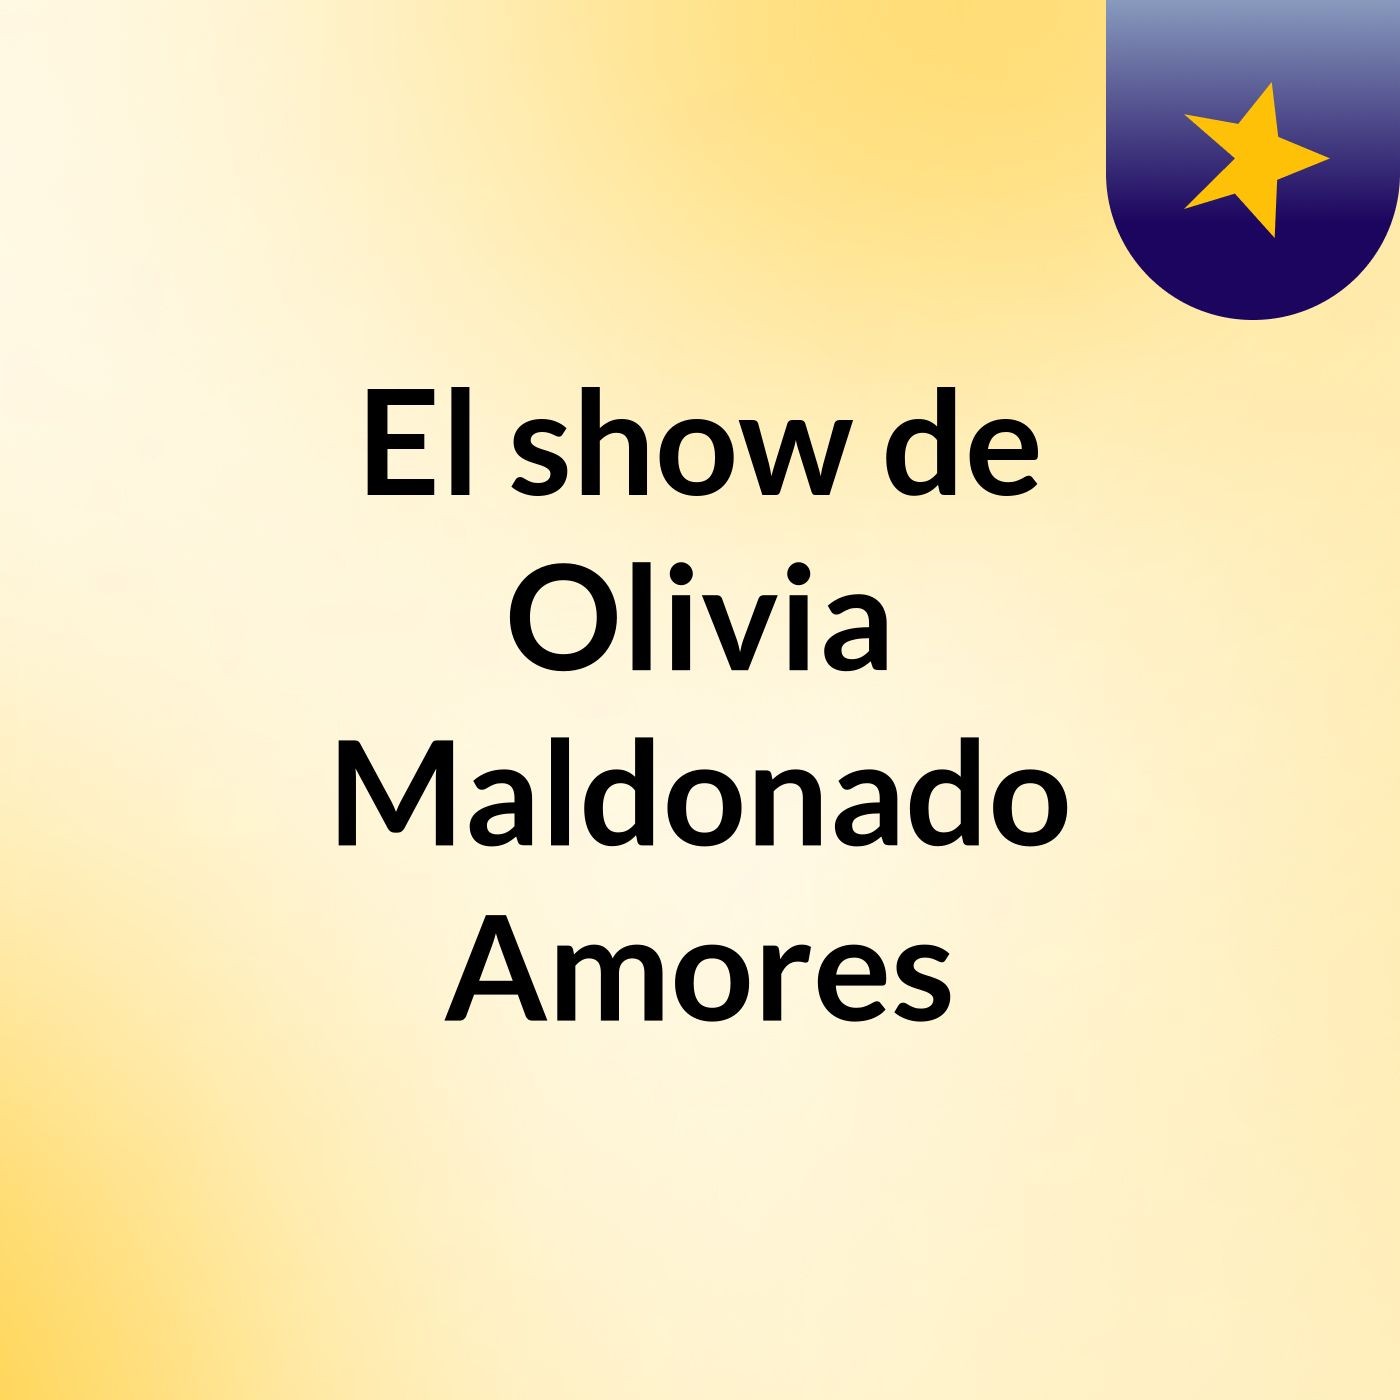 El show de Olivia Maldonado Amores